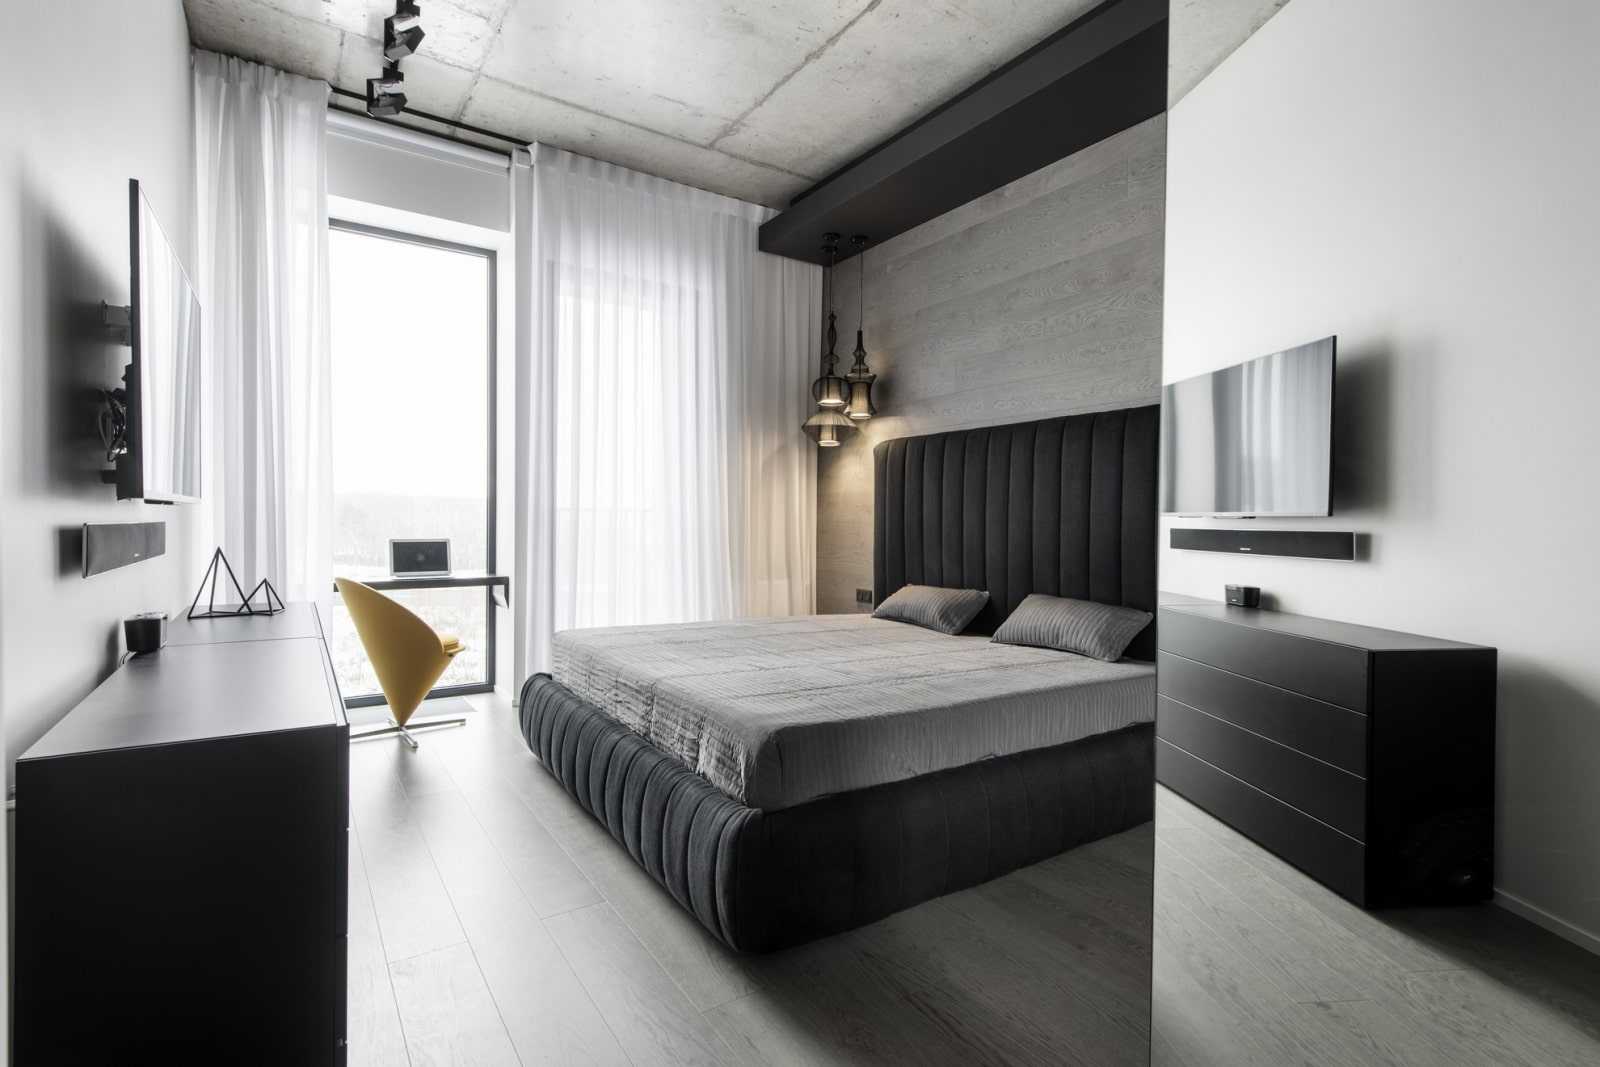 Интерьер в стиле минимализм – особенности дизайна квартиры в минималистичном стиле